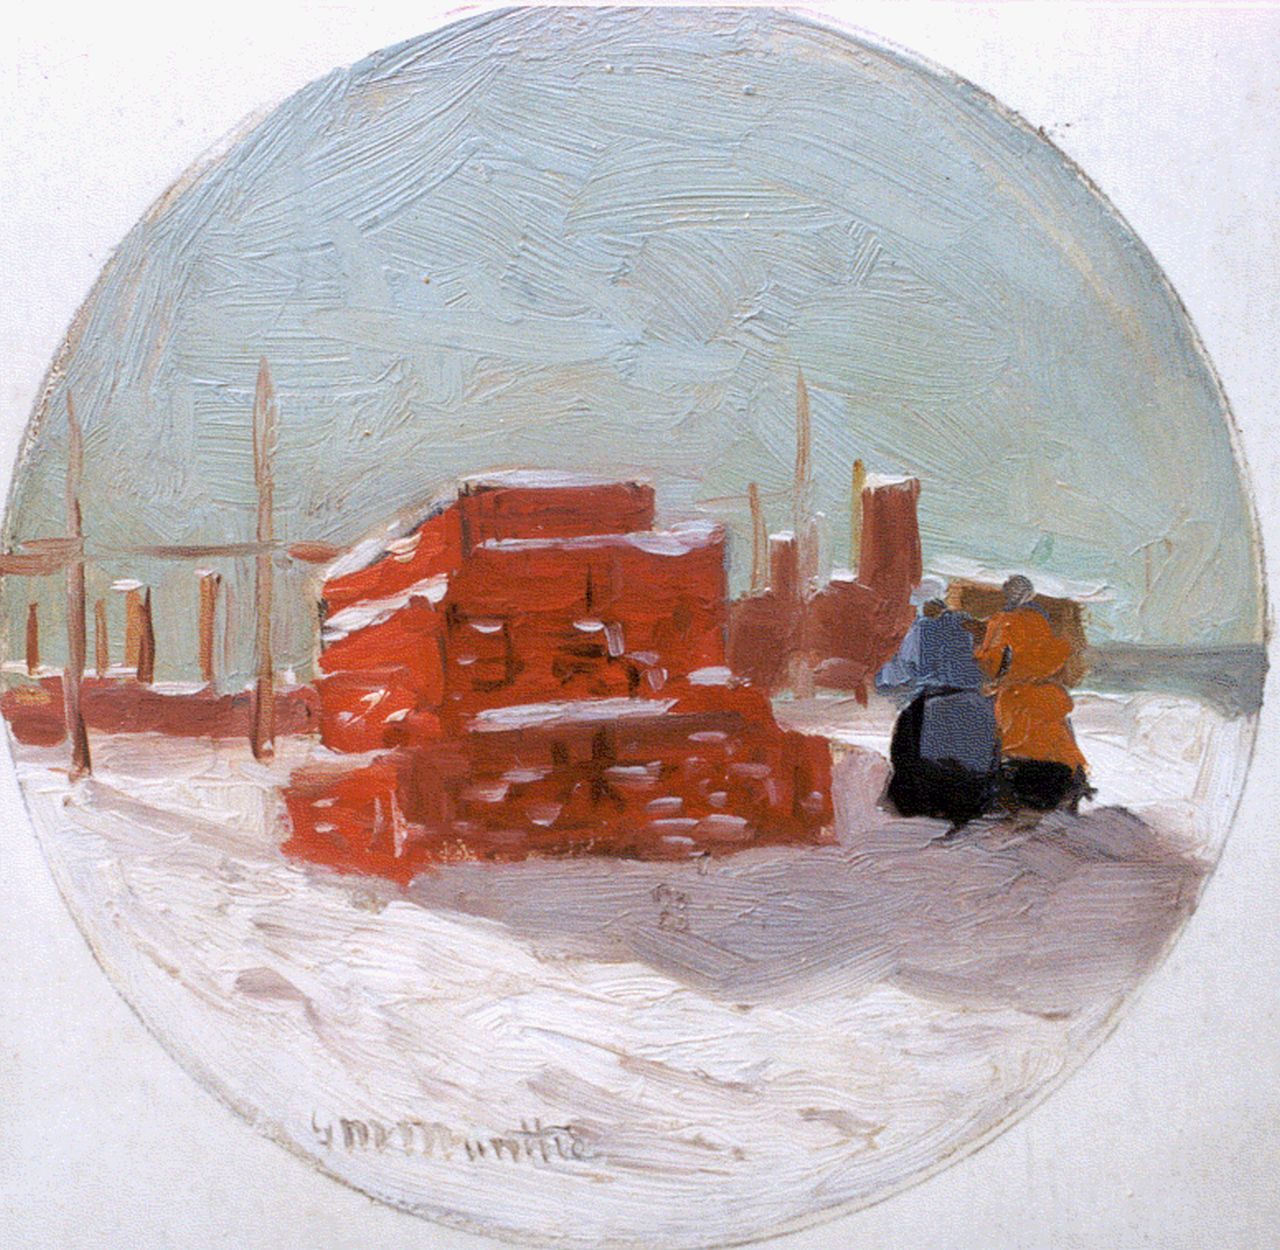 Munthe G.A.L.  | Gerhard Arij Ludwig 'Morgenstjerne' Munthe, A beach in winter, 16,9 x 16,0 cm, signed l.l.